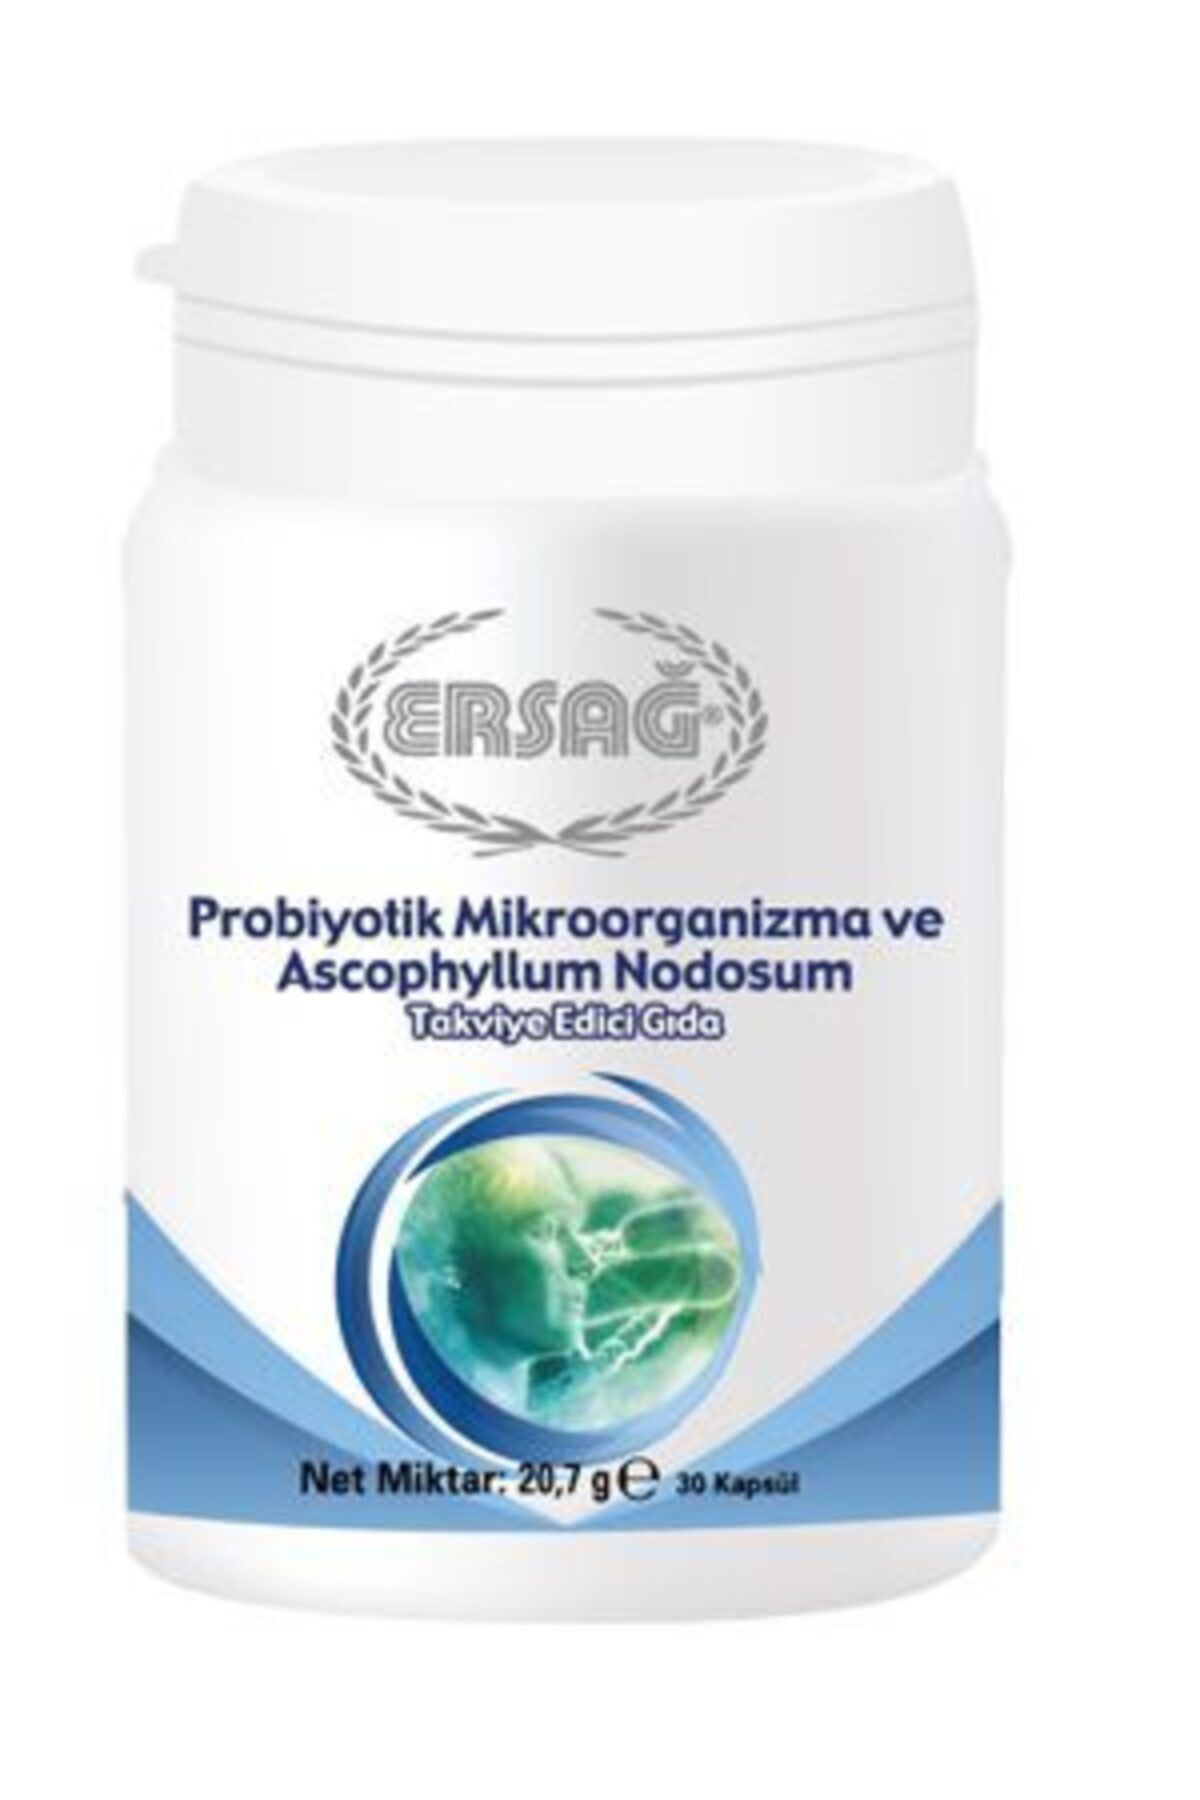 Ersağ Probiyotik Mikroorganizma Ve Ascophyllum Nodosuml Takviye Edici Gıda 30 Kapsül